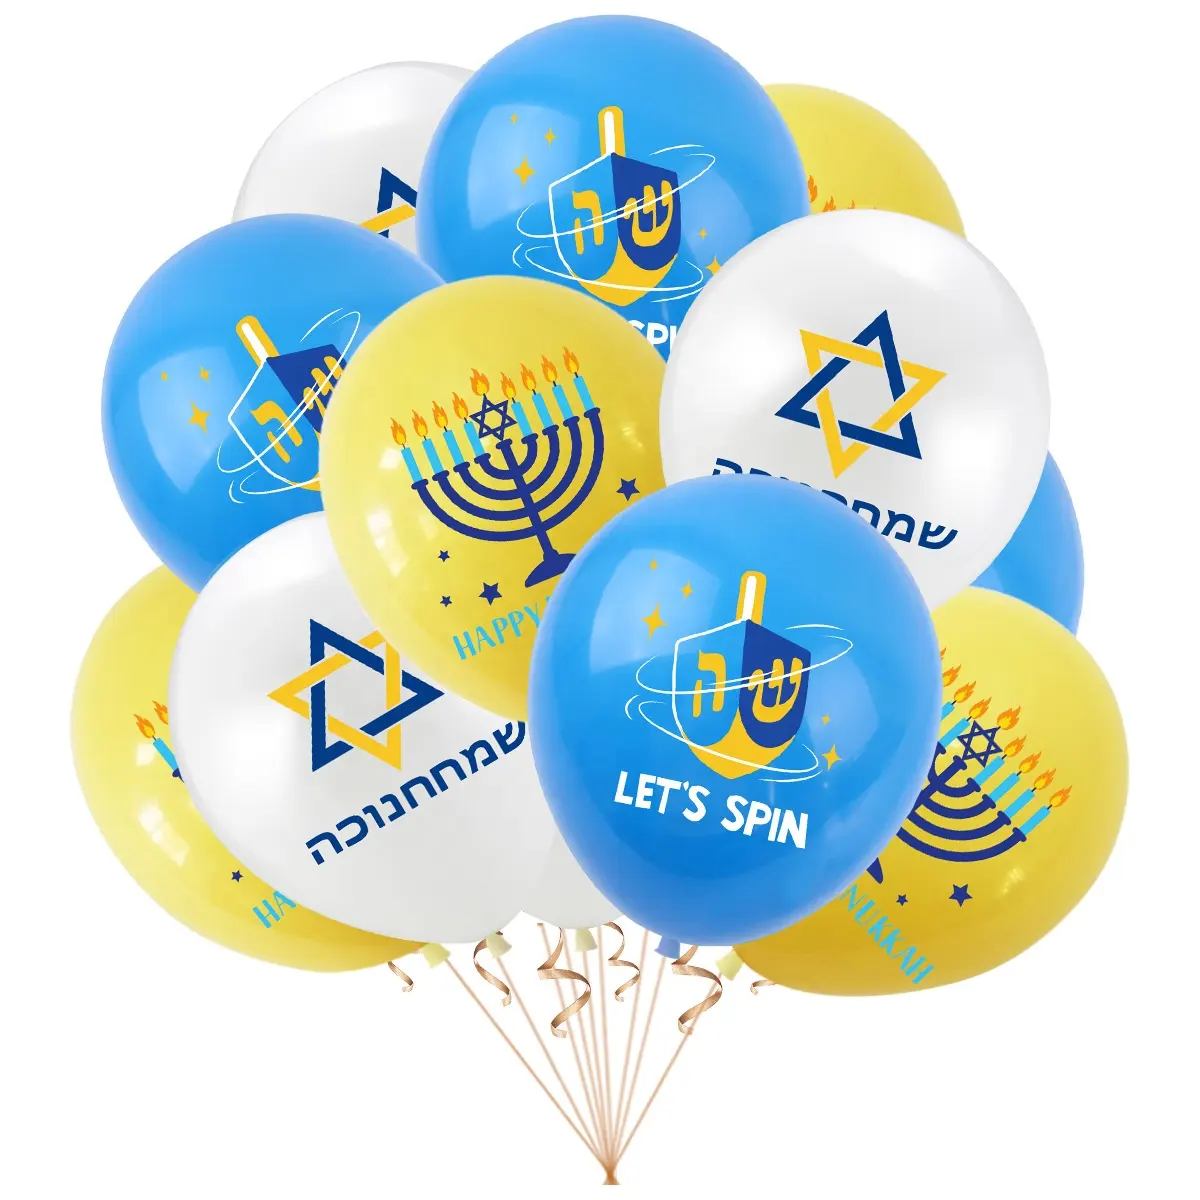 12 pollici Menorah Dreidel Chanukah palloncini in lattice Hanukkah Party palloncini per feste ebraici per feste e decorazioni per interni all'aperto